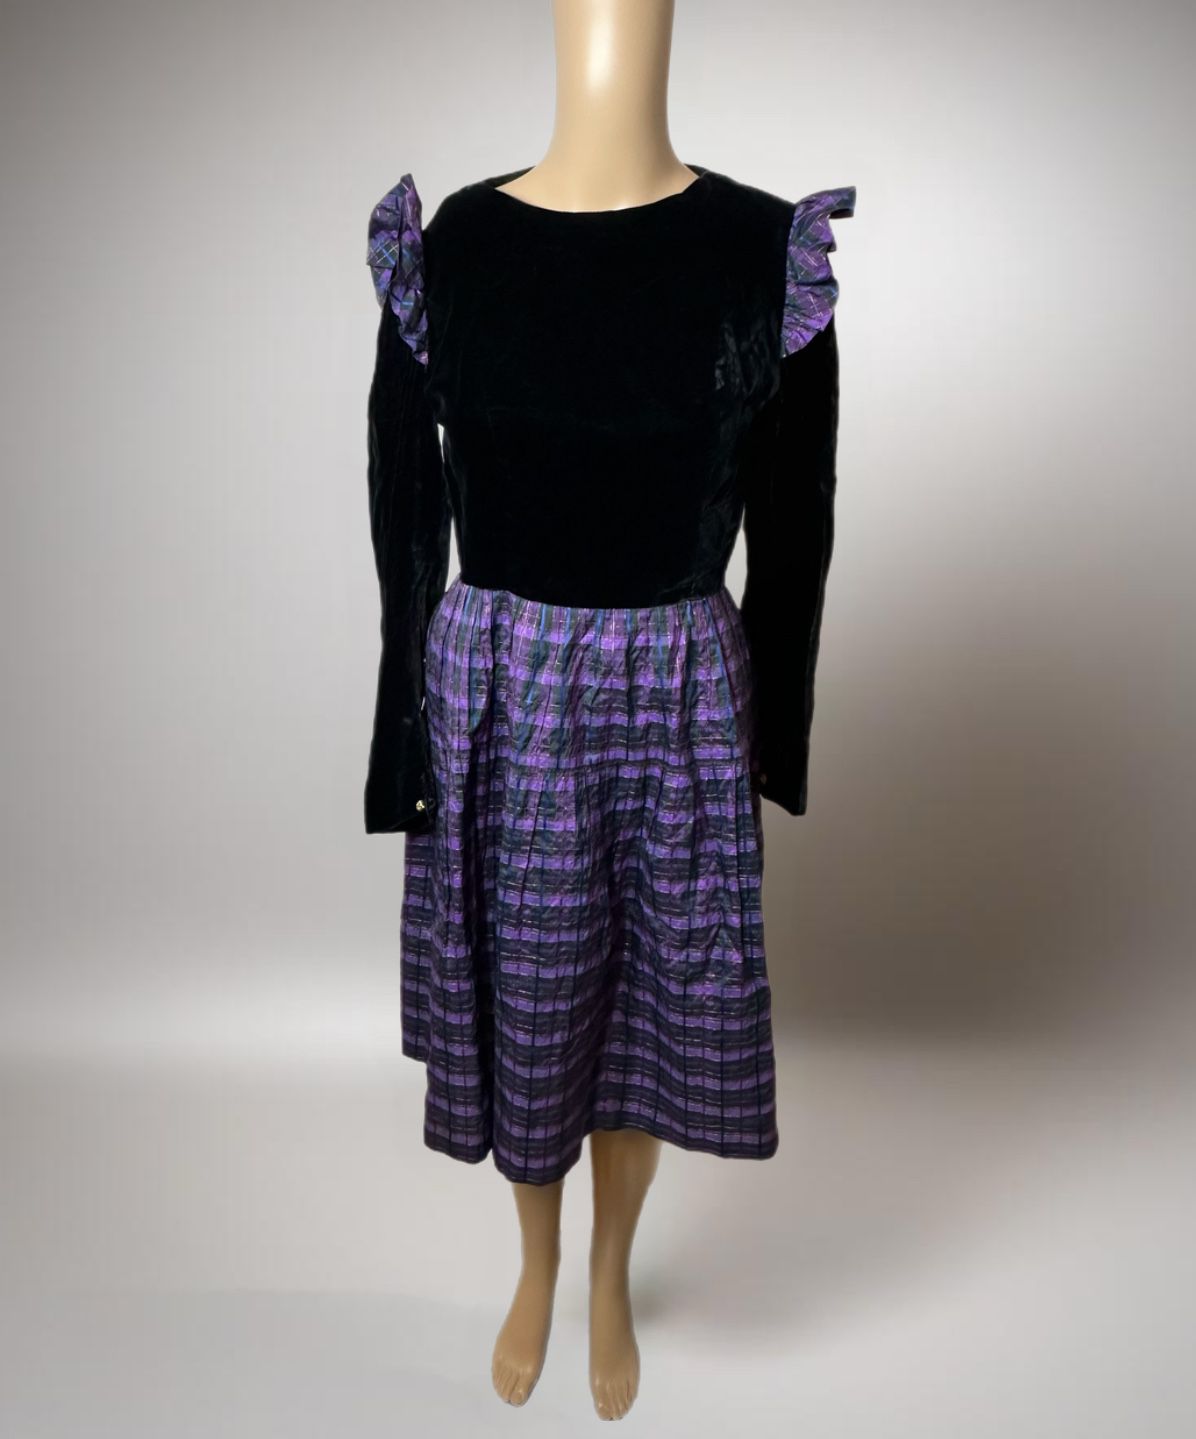 Vtg Merveilluses Black/Purple Velvet/Satin Dress